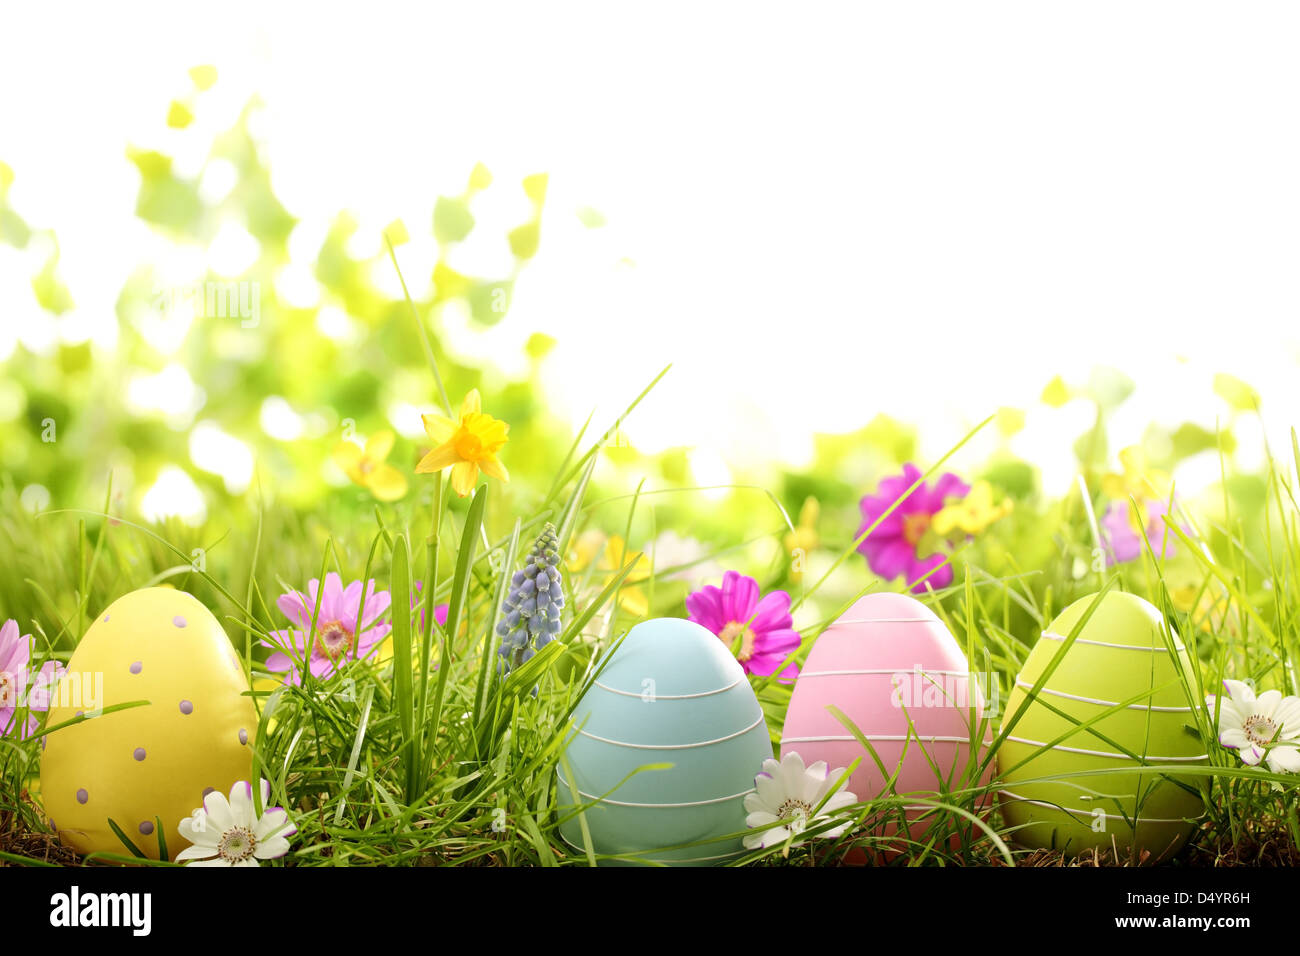 Le uova di pasqua sul prato con fiore di primavera Foto Stock